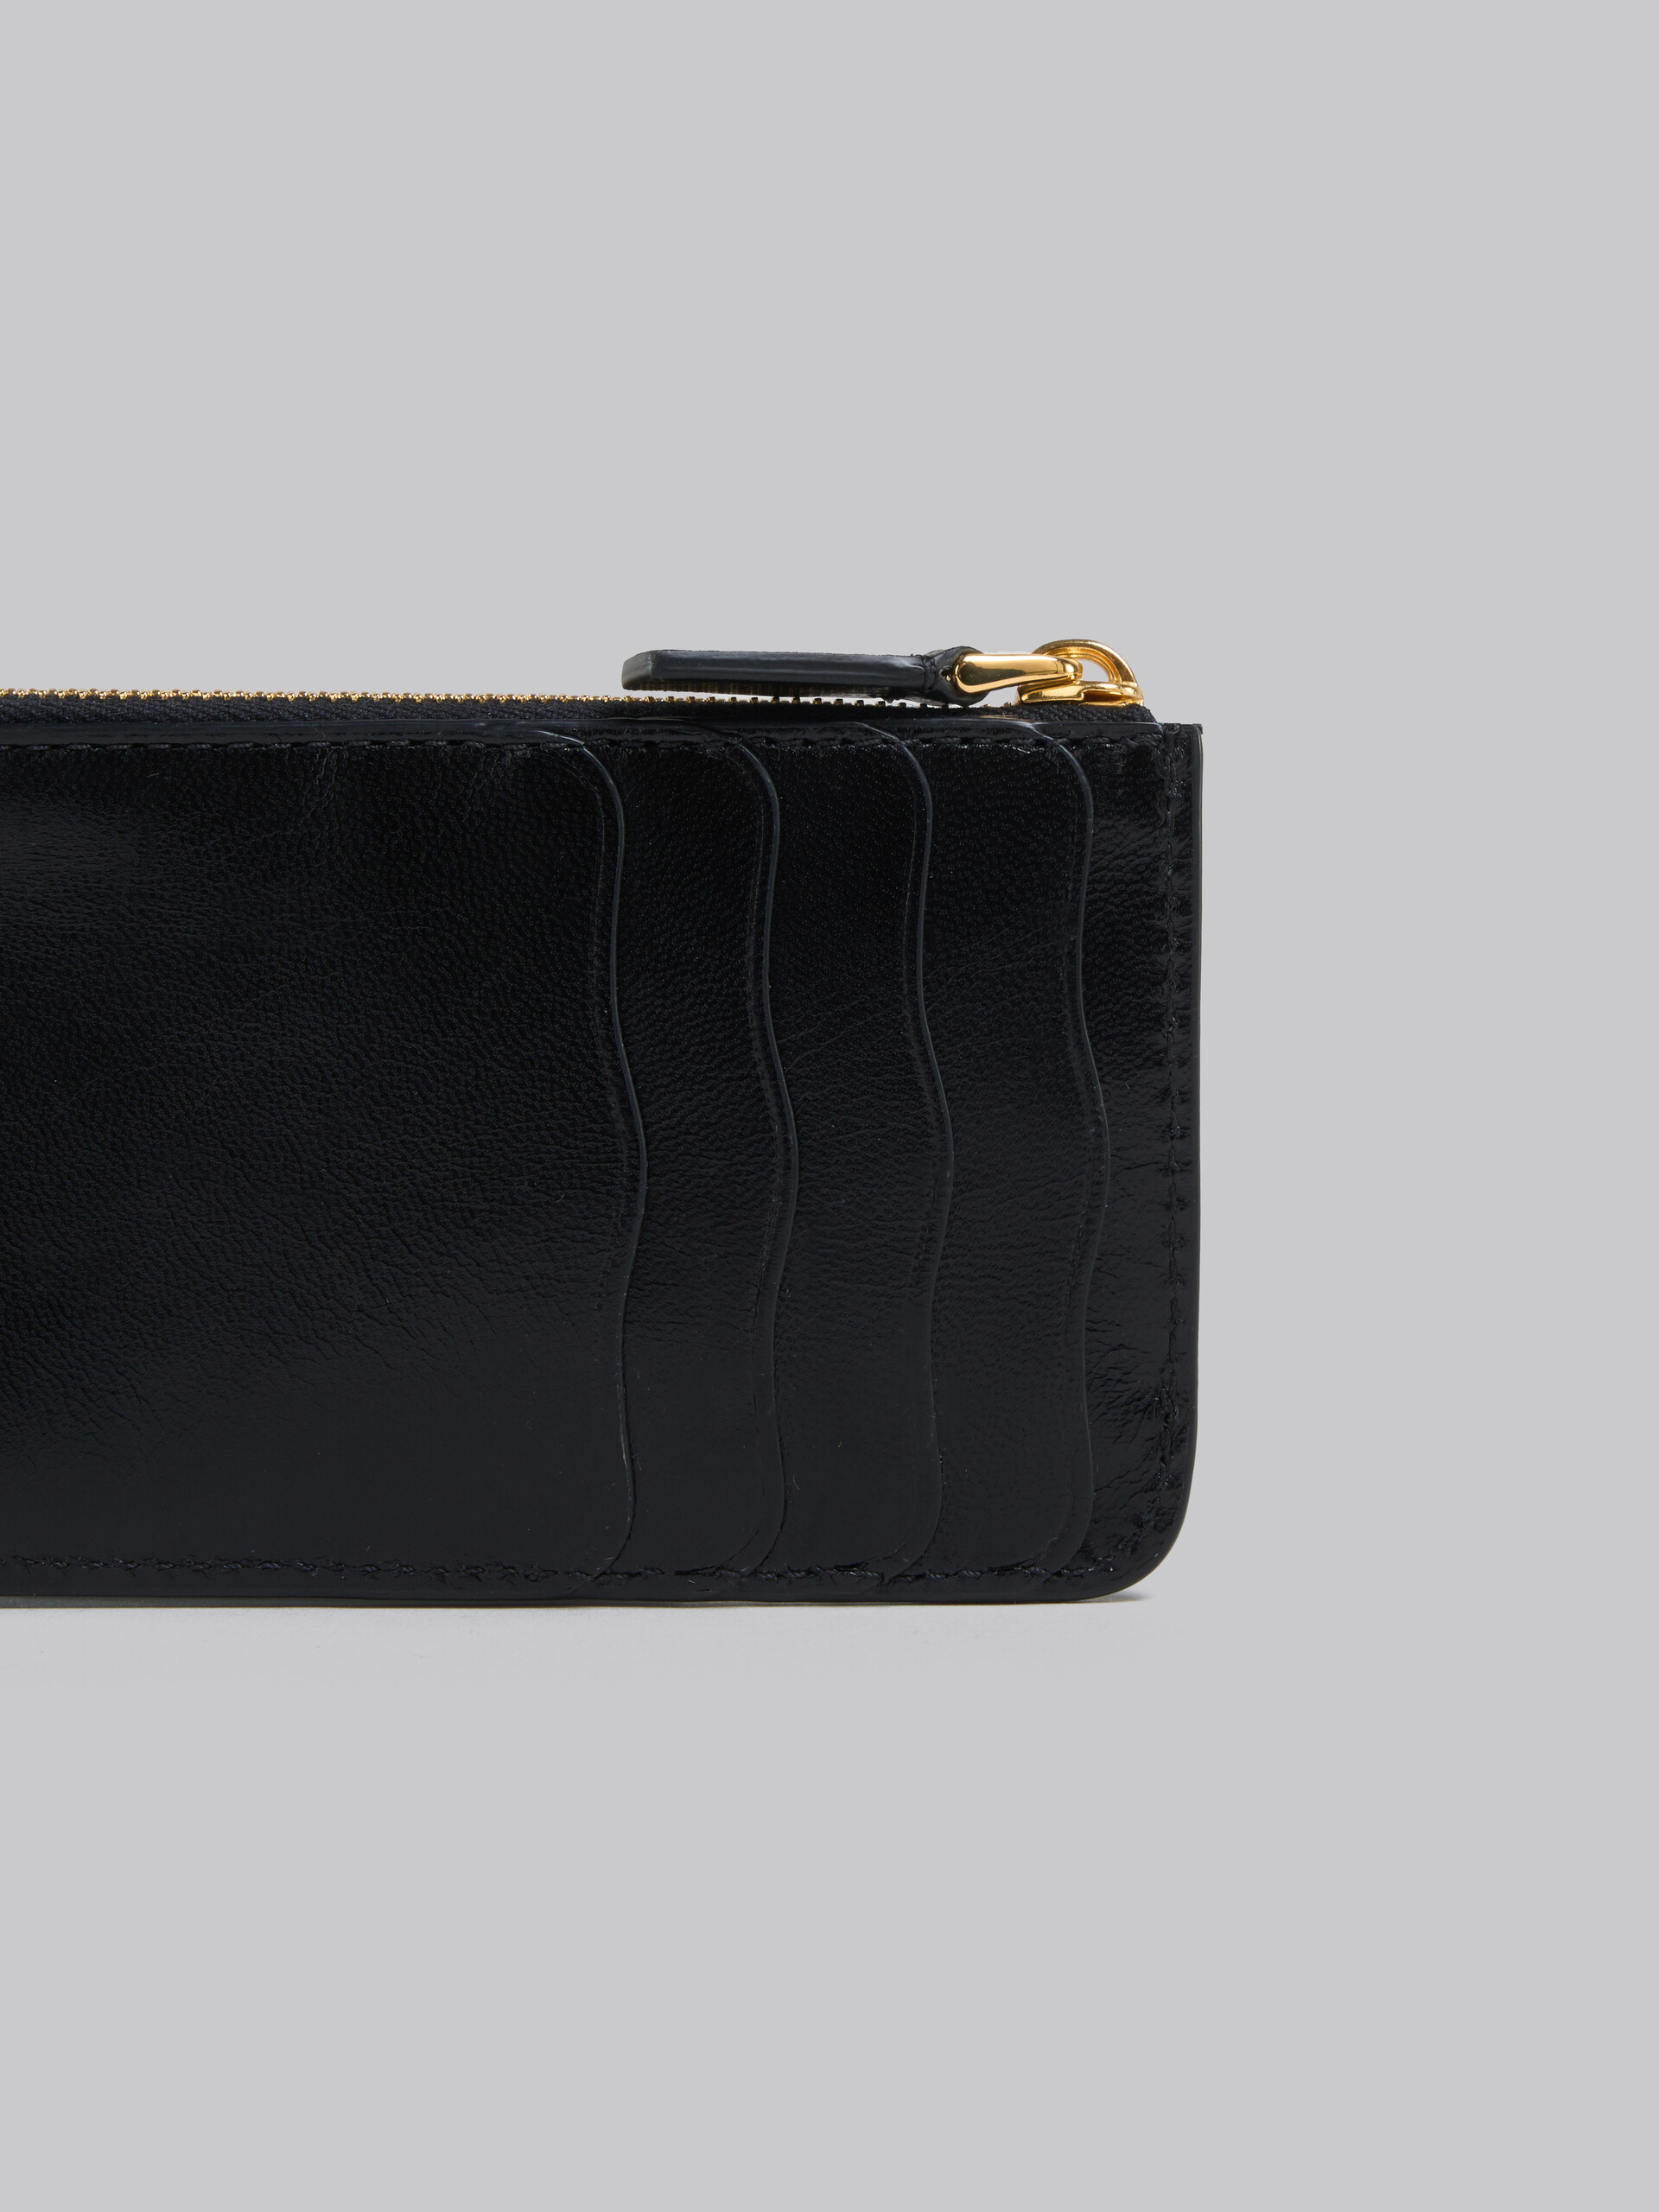 Schwarzes Lederportemonnaie mit wellenförmigen Fächern - Brieftaschen - Image 4